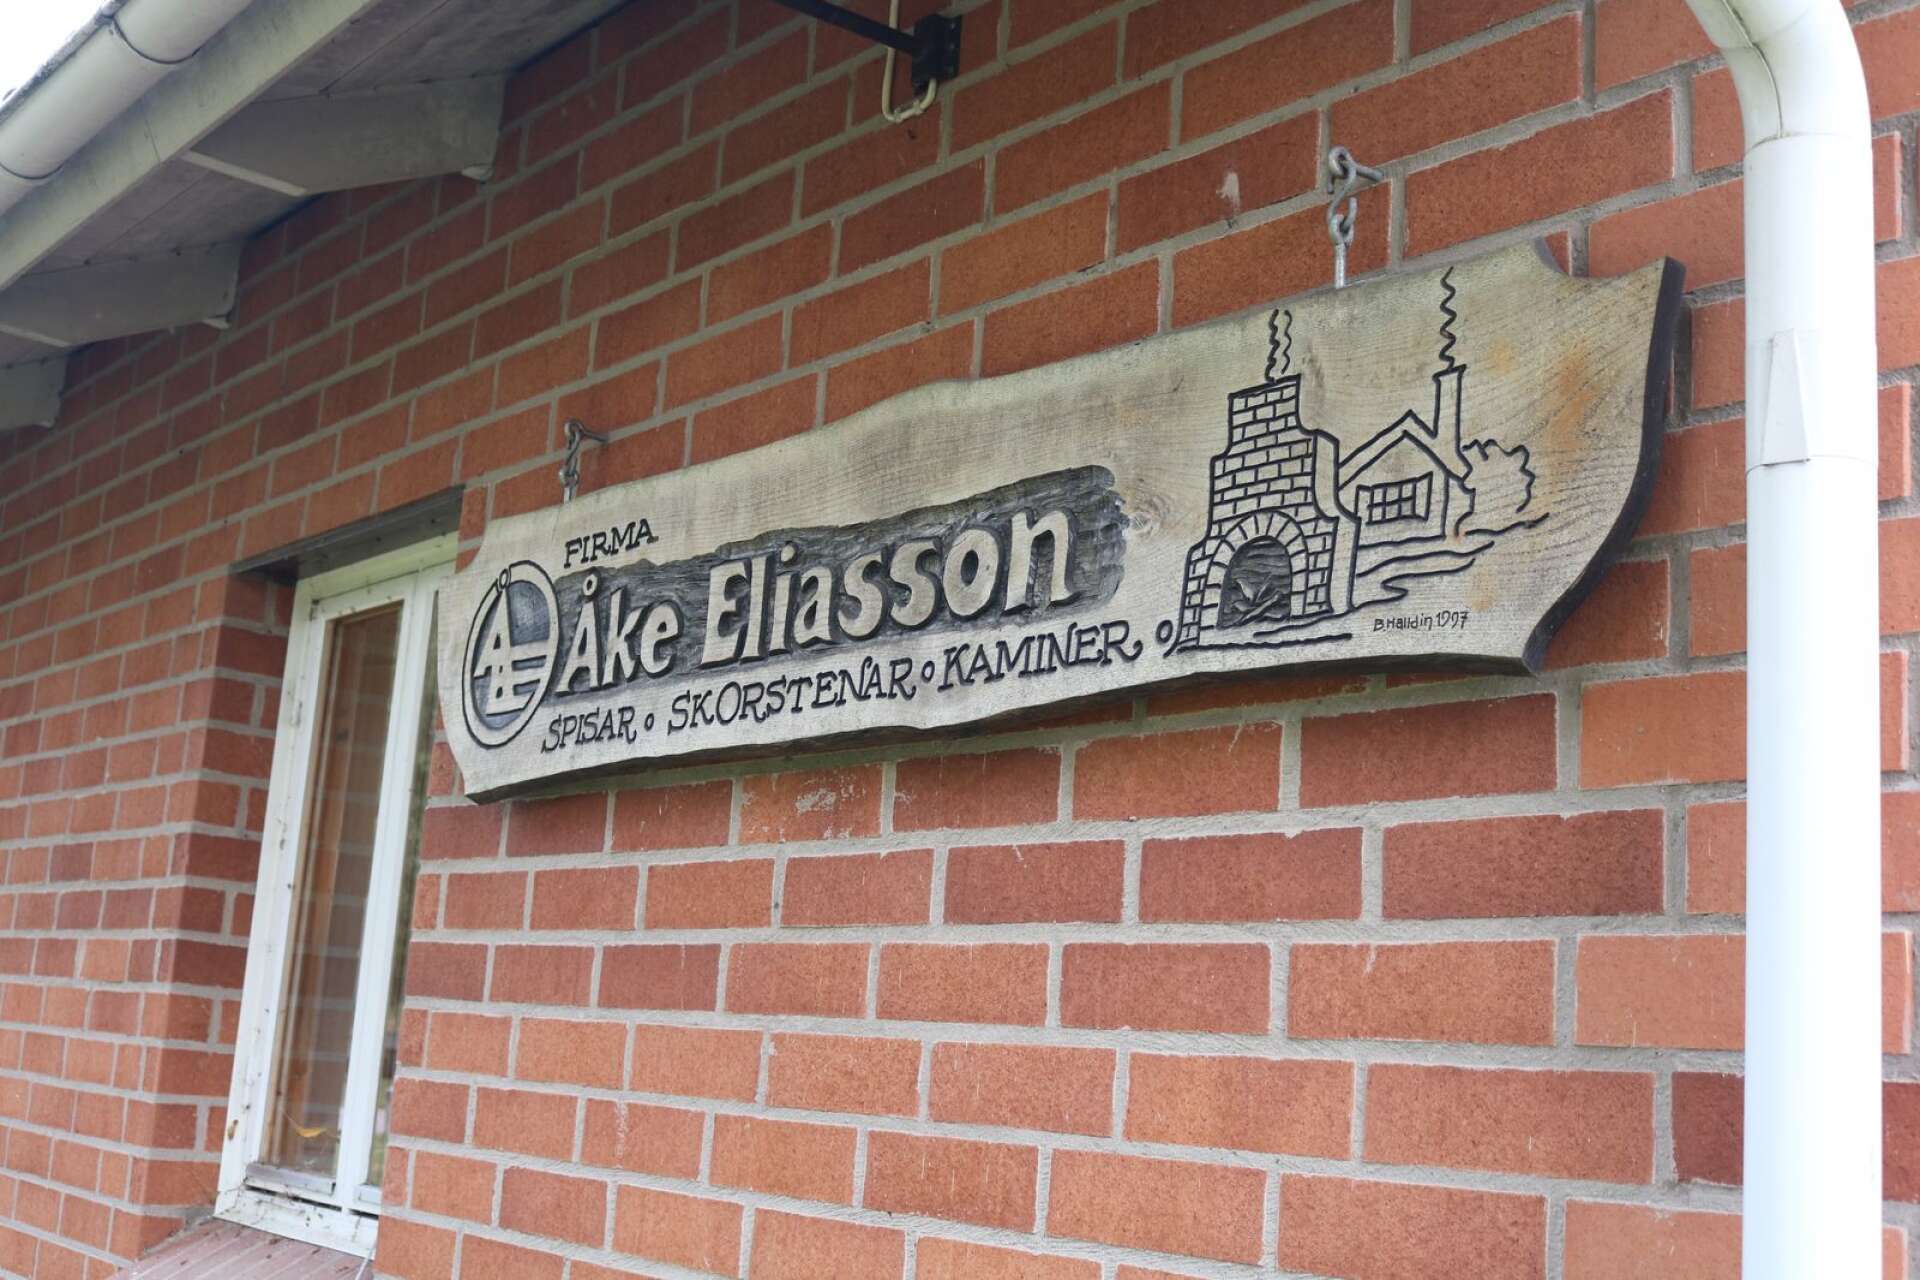 Åke Eliasson skorstenar och kaminer i Essunga har funnits i många år. Butiken på gården öppnade 1991.